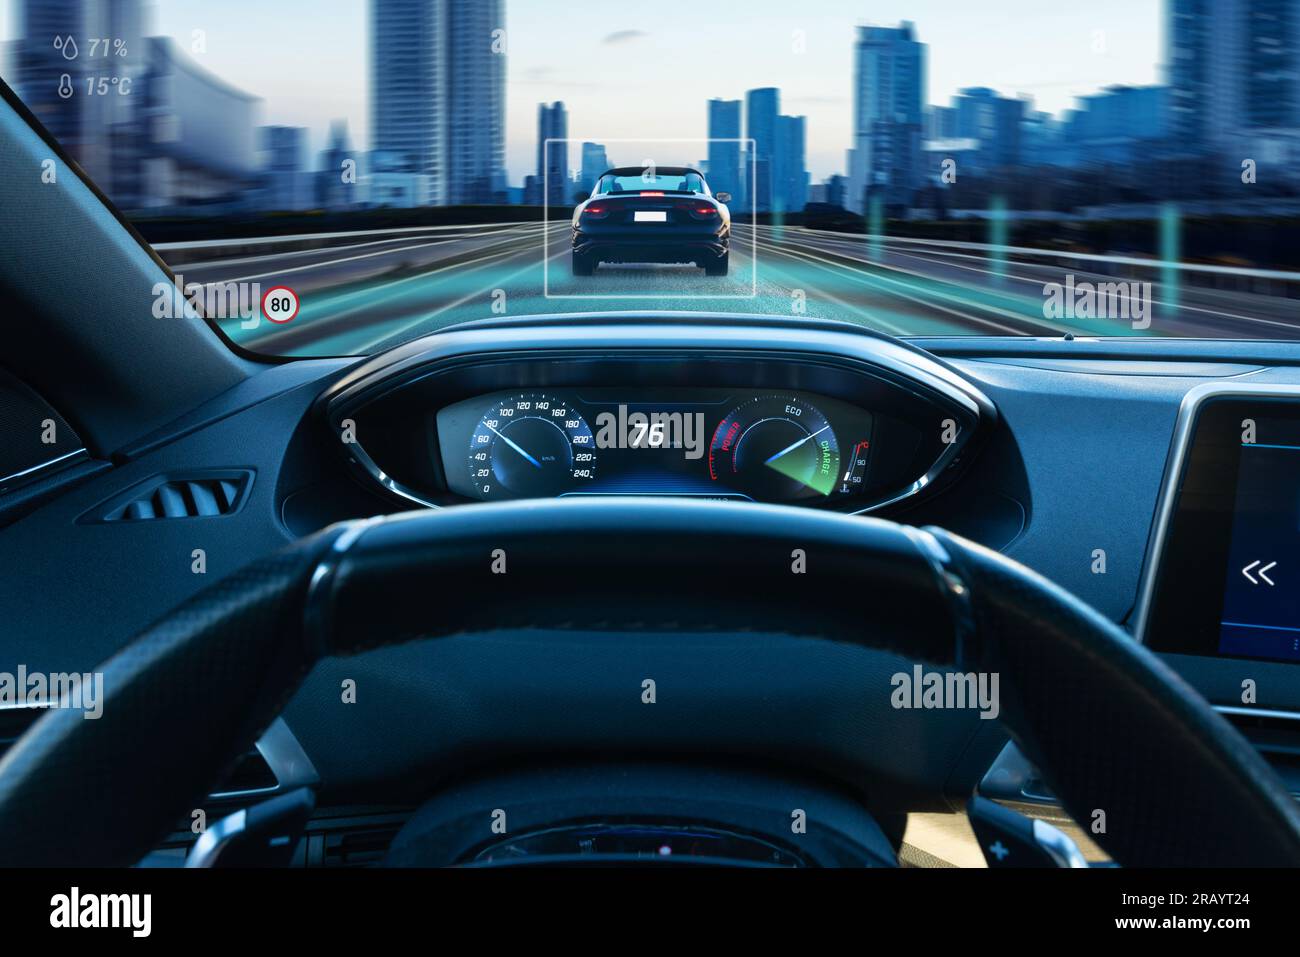 Scena di guida urbana autonoma dal punto di vista del subacqueo, che mostra grafica di guida autonoma, auto, strade cittadine ed edifici Foto Stock